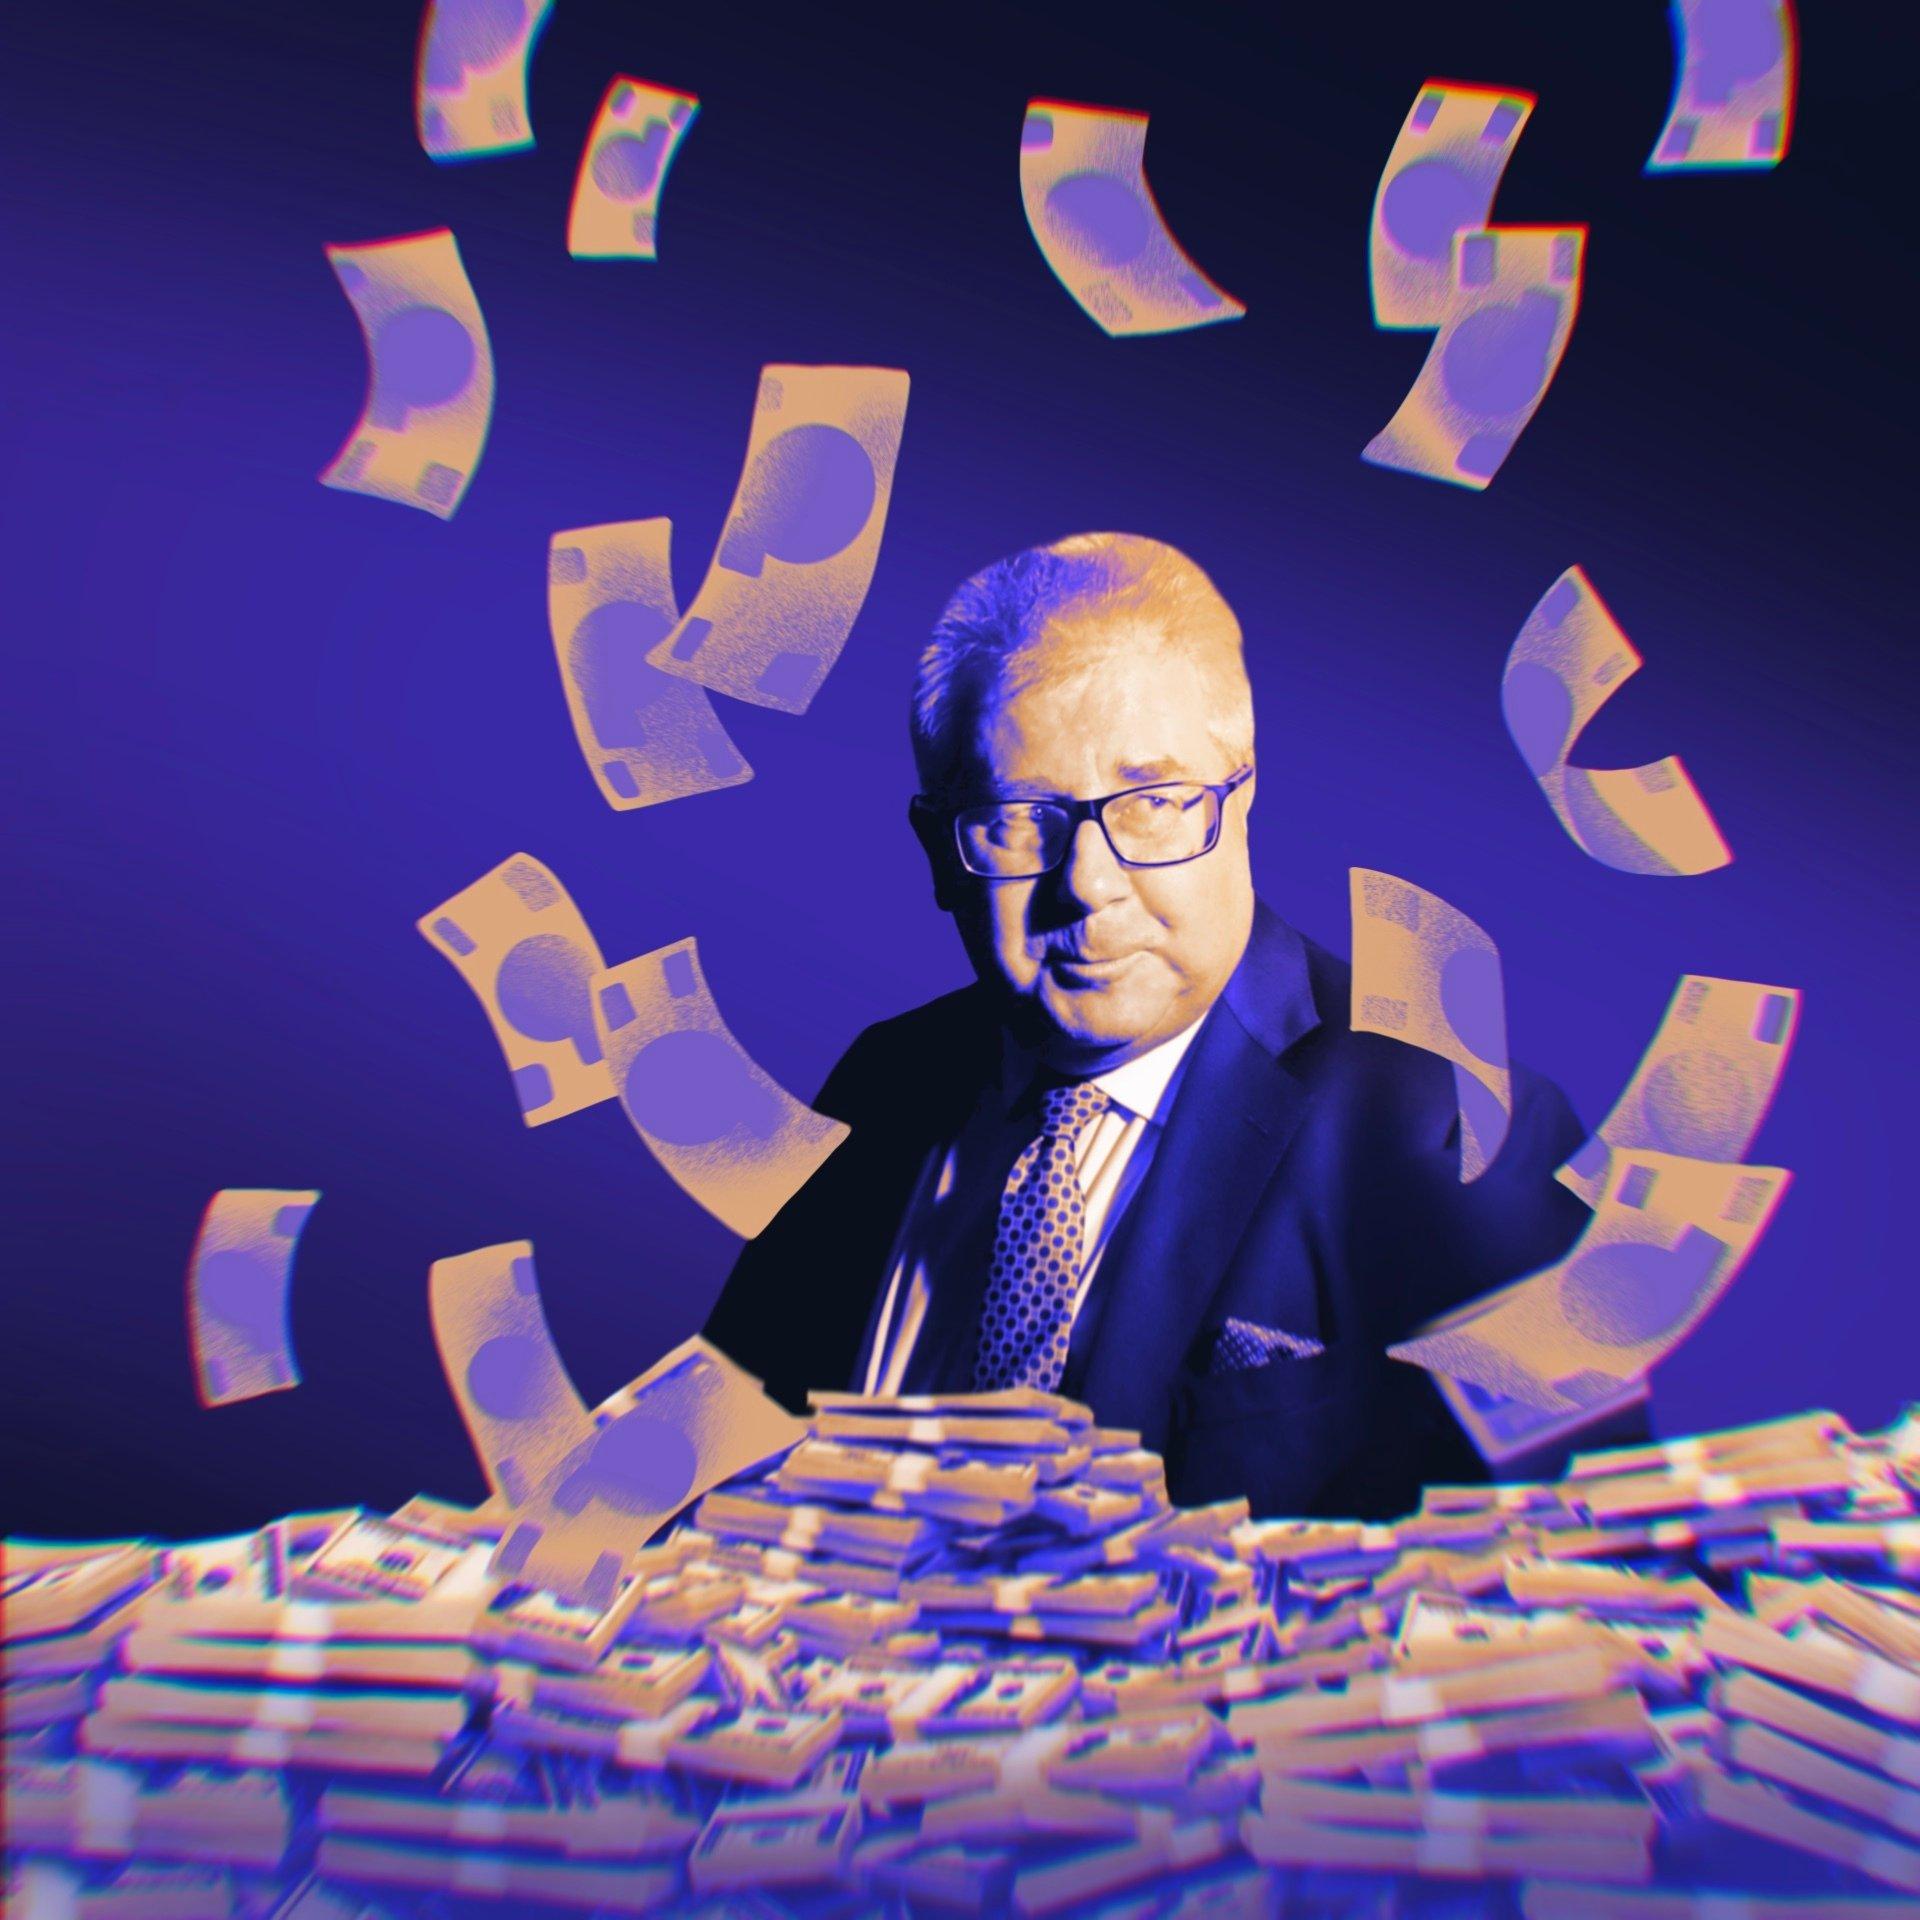 Europoseł Ryszard Czarnecki, mężczyzna w średnim wieku, krótko ostrzyżony i siwy, w okularach i w garniturze siedzi za stołem pełnym plików banknotów, wokół niego fruwające banknoty. Ilustracja utrzymana w fioletowej kolorystyce.